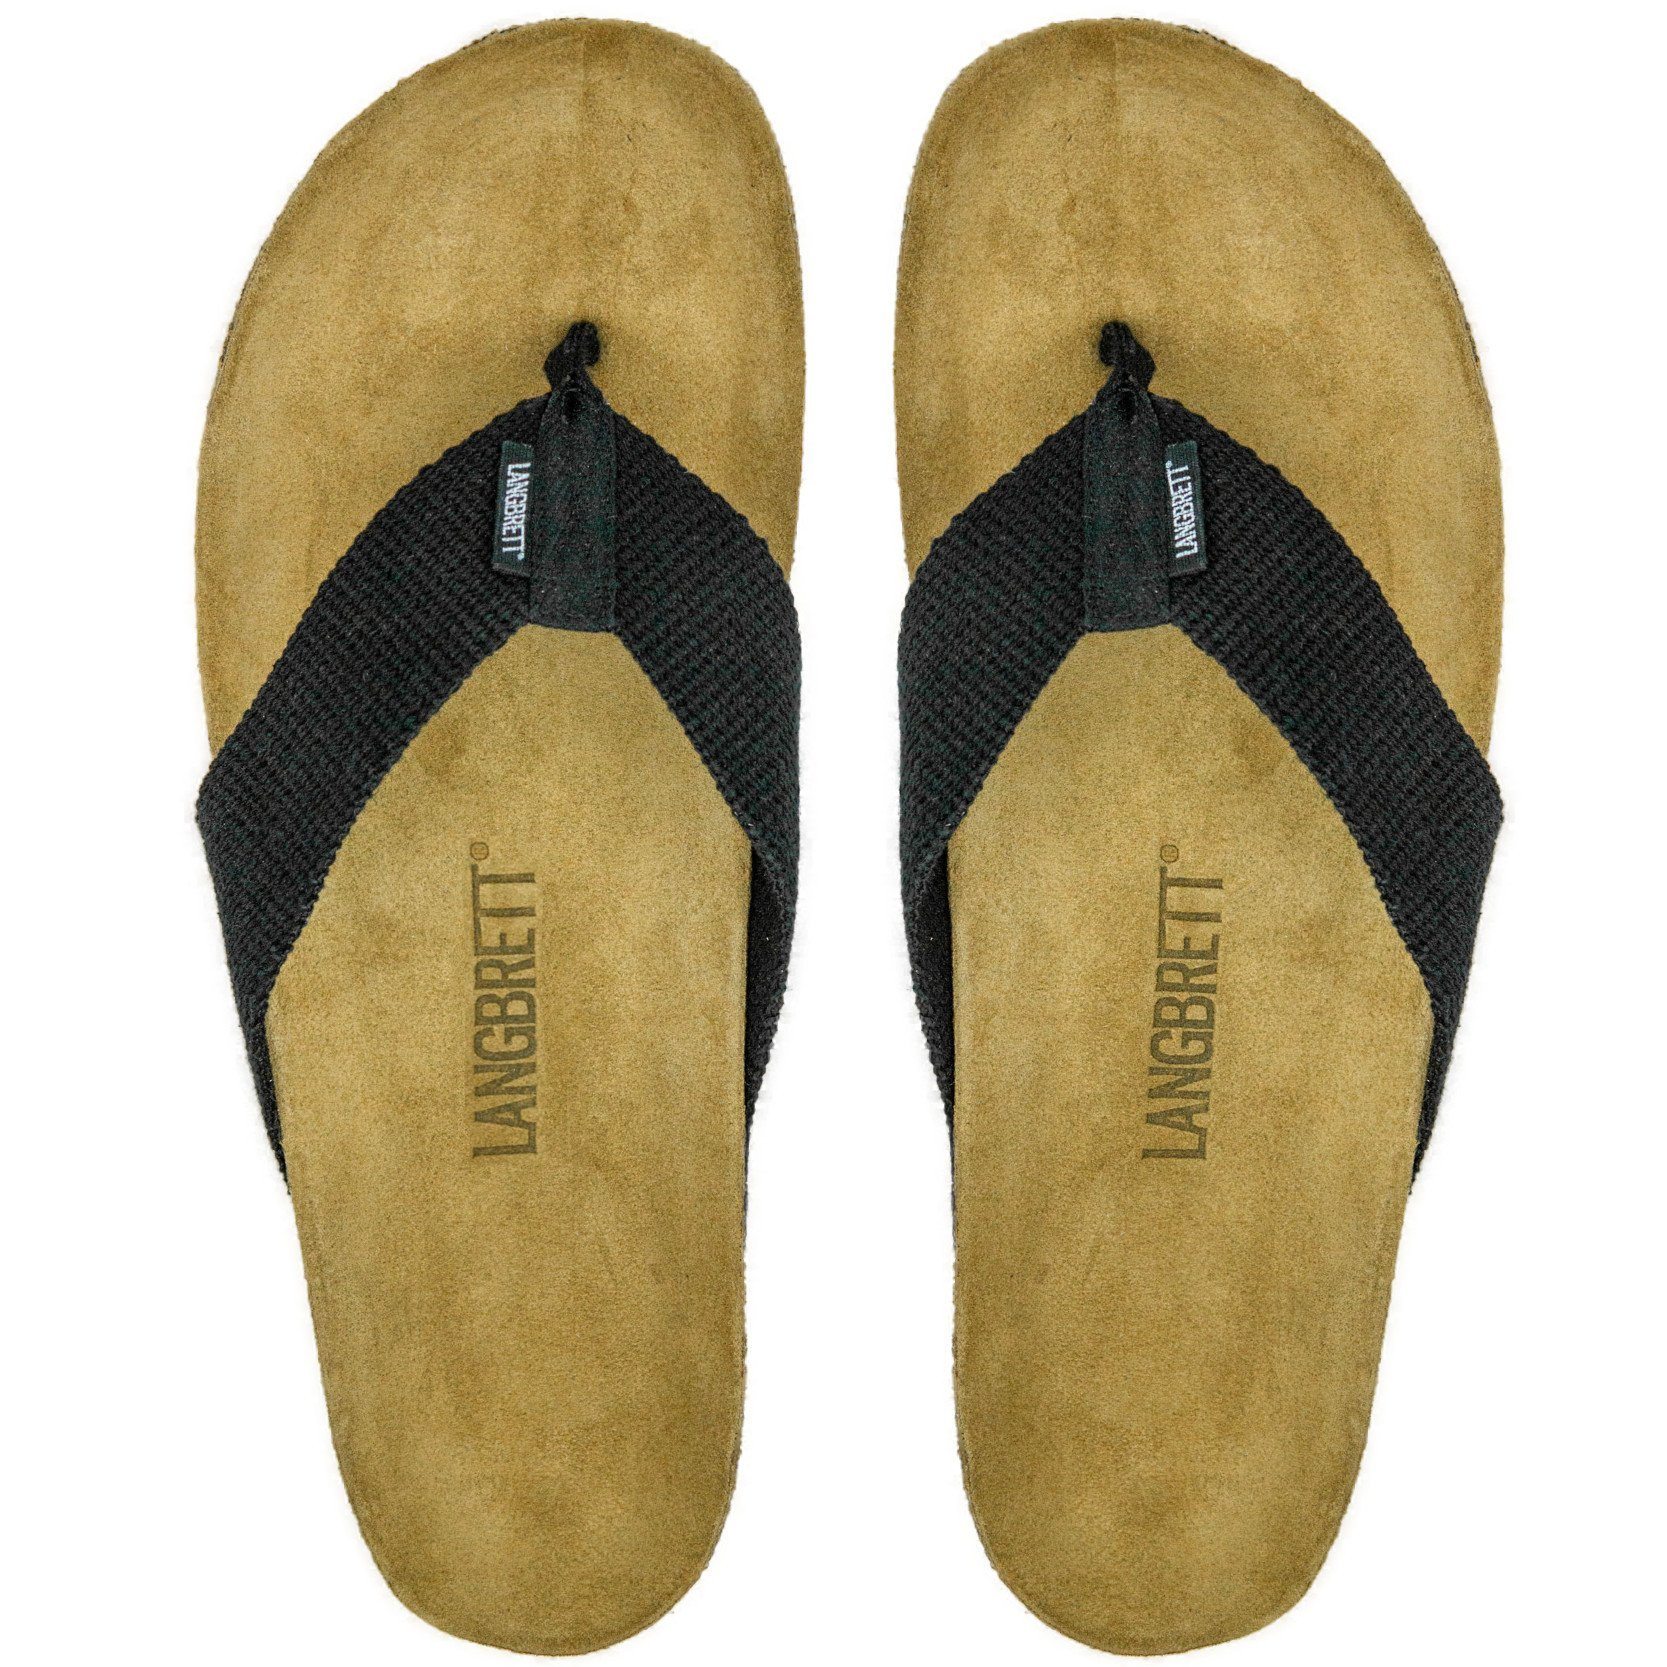 LANGBRETT GUR Ecological sandals, Black / 45